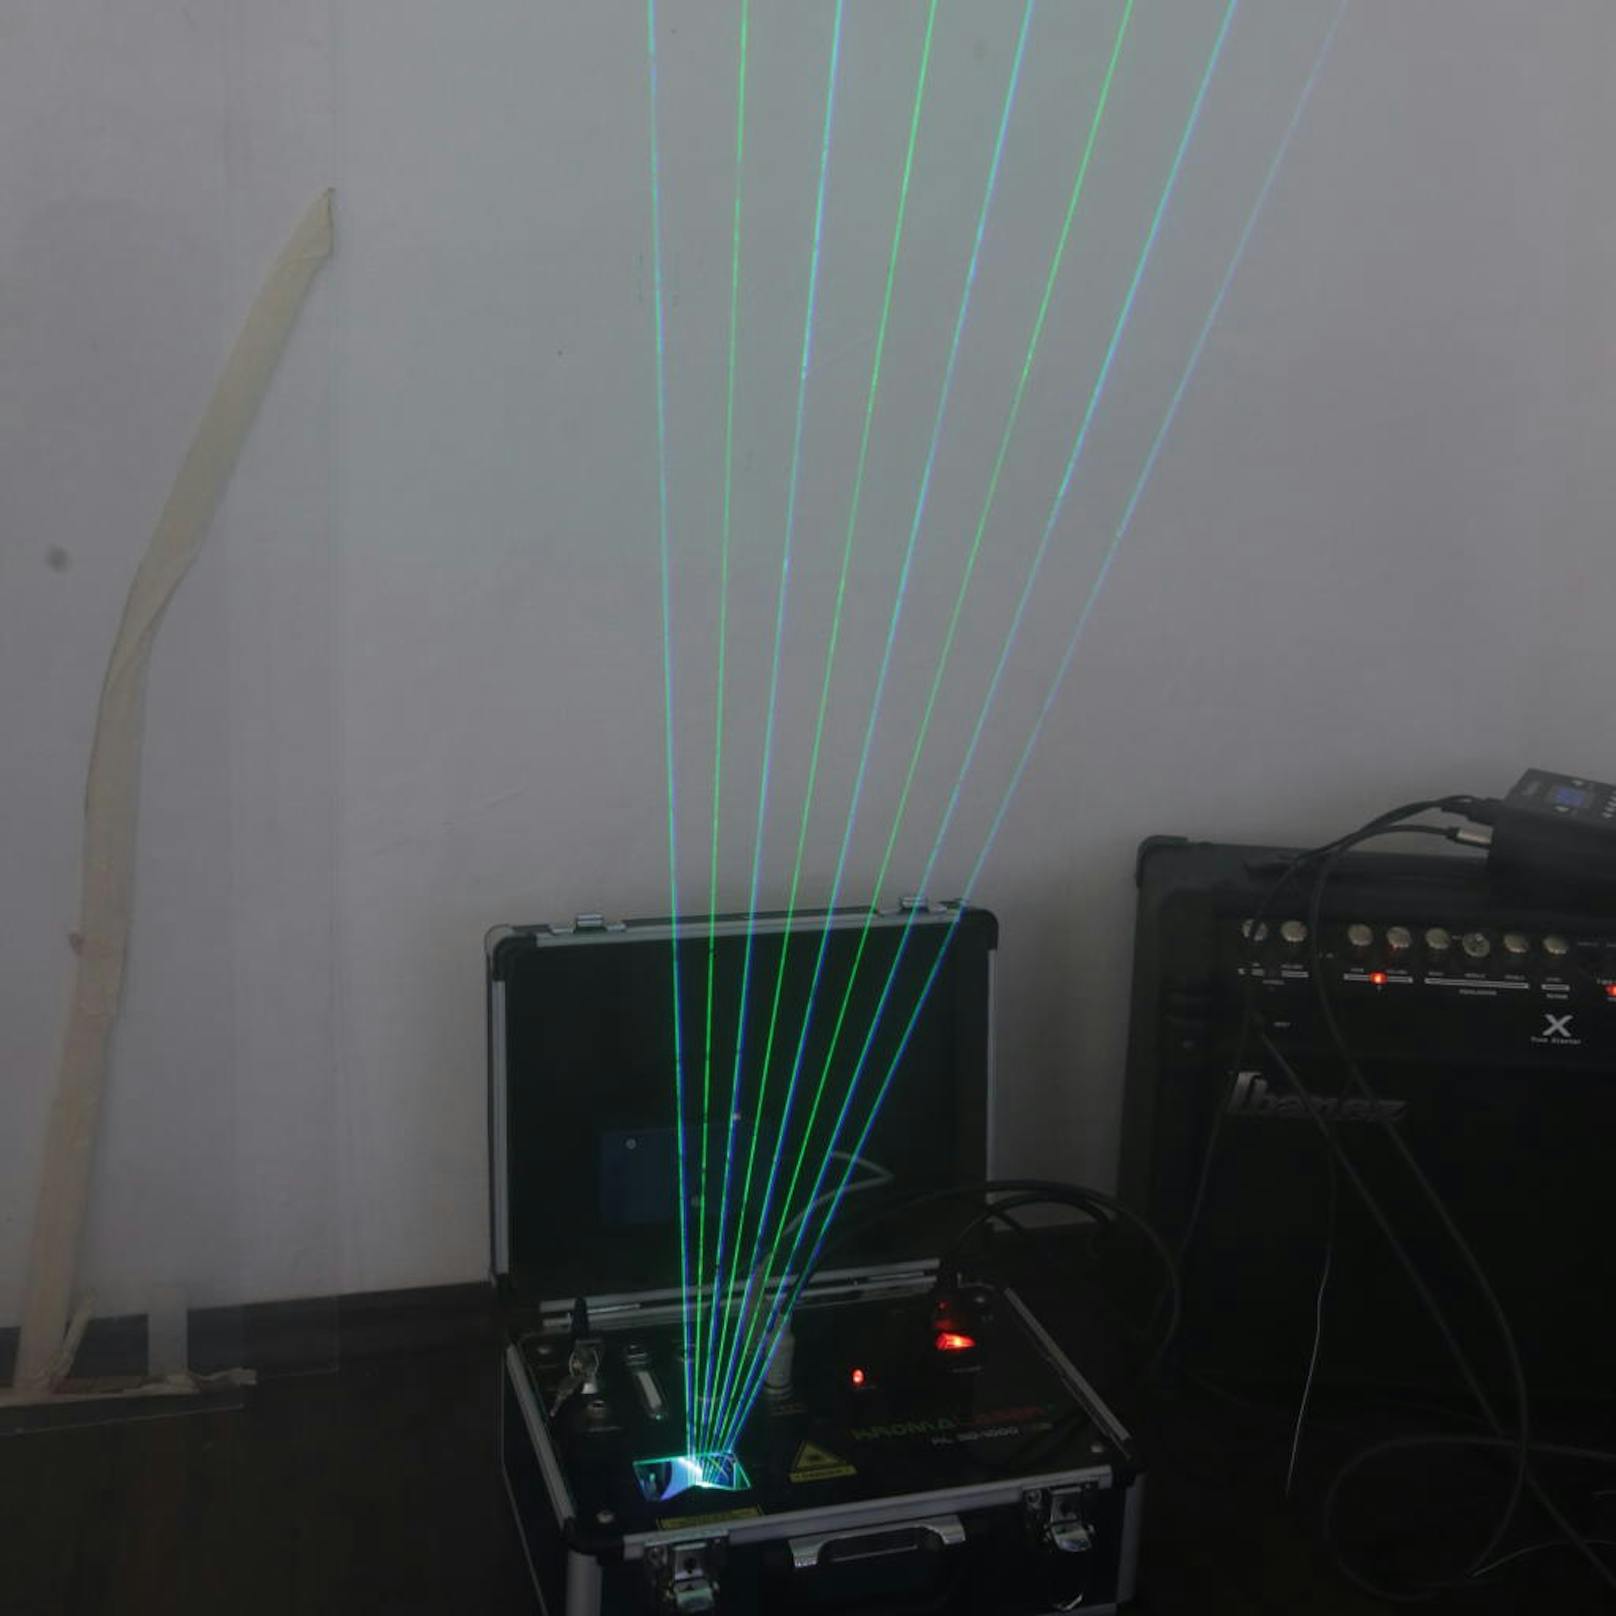 Obwohl die "Tasten" der LaserHarp aus reinem Licht bestehen, ist der Unterschied zum herkömmlichen Klavier kaum hörbar.